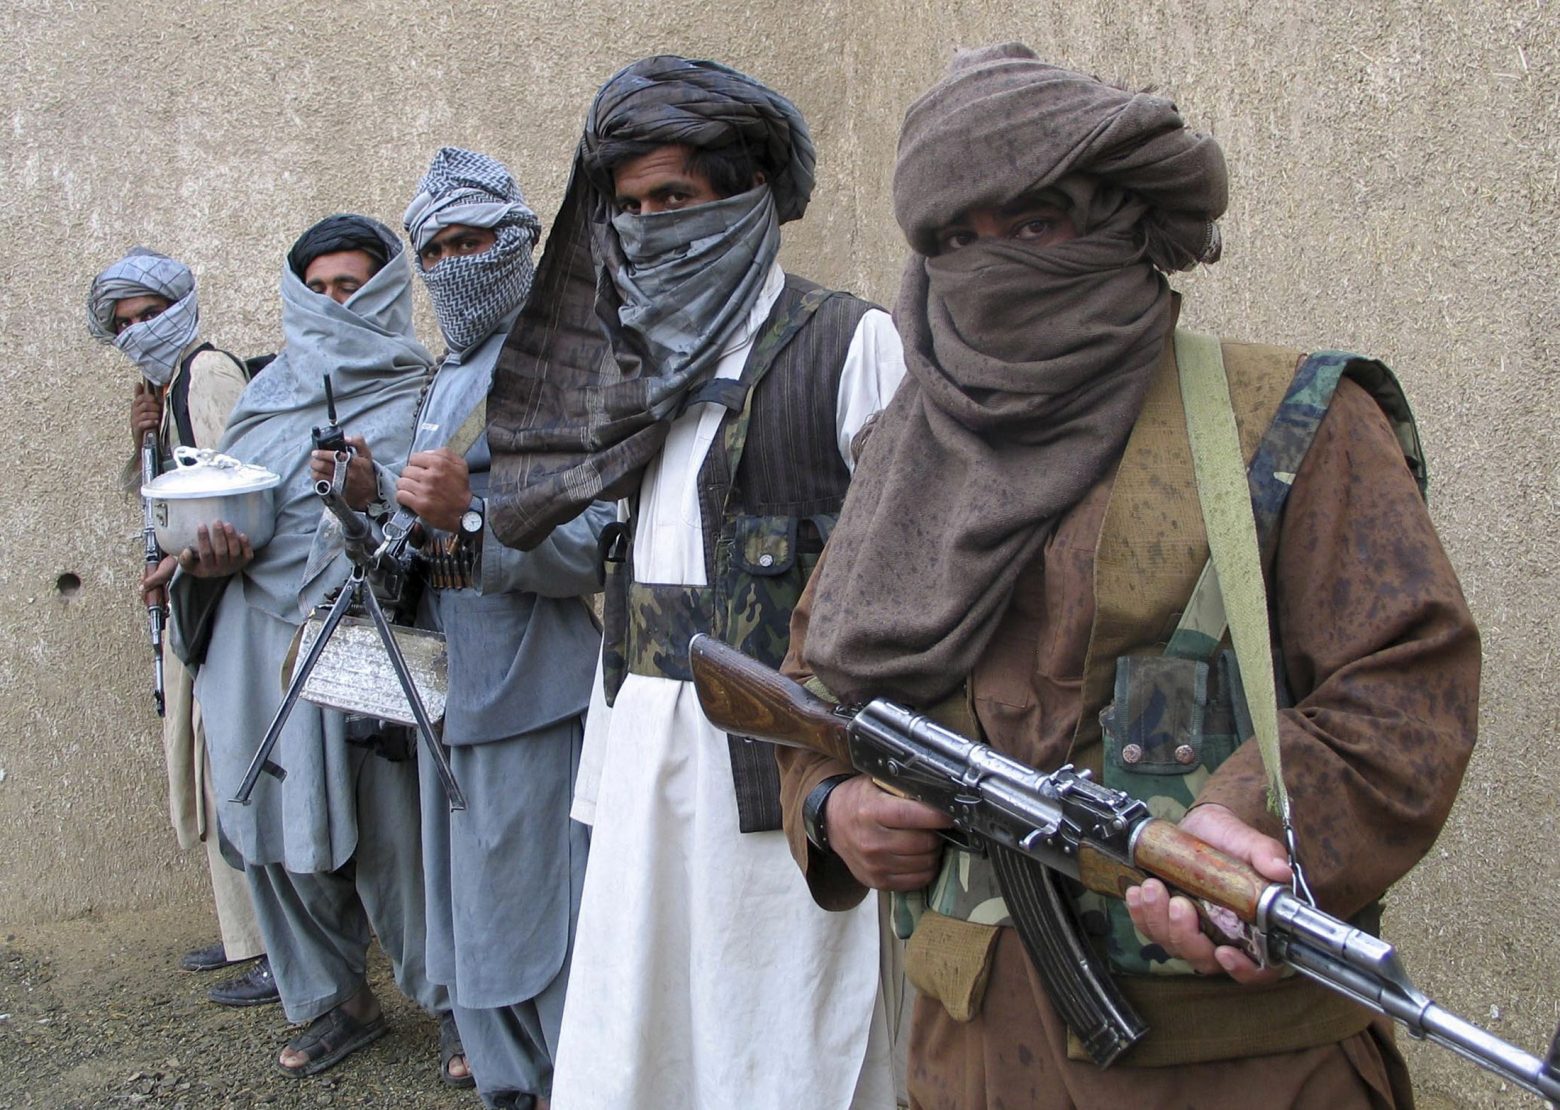 Ποιοι είναι οι Ταλιμπάν και πως ανακατέλαβαν την εξουσία - ΤΟ ΒΗΜΑ